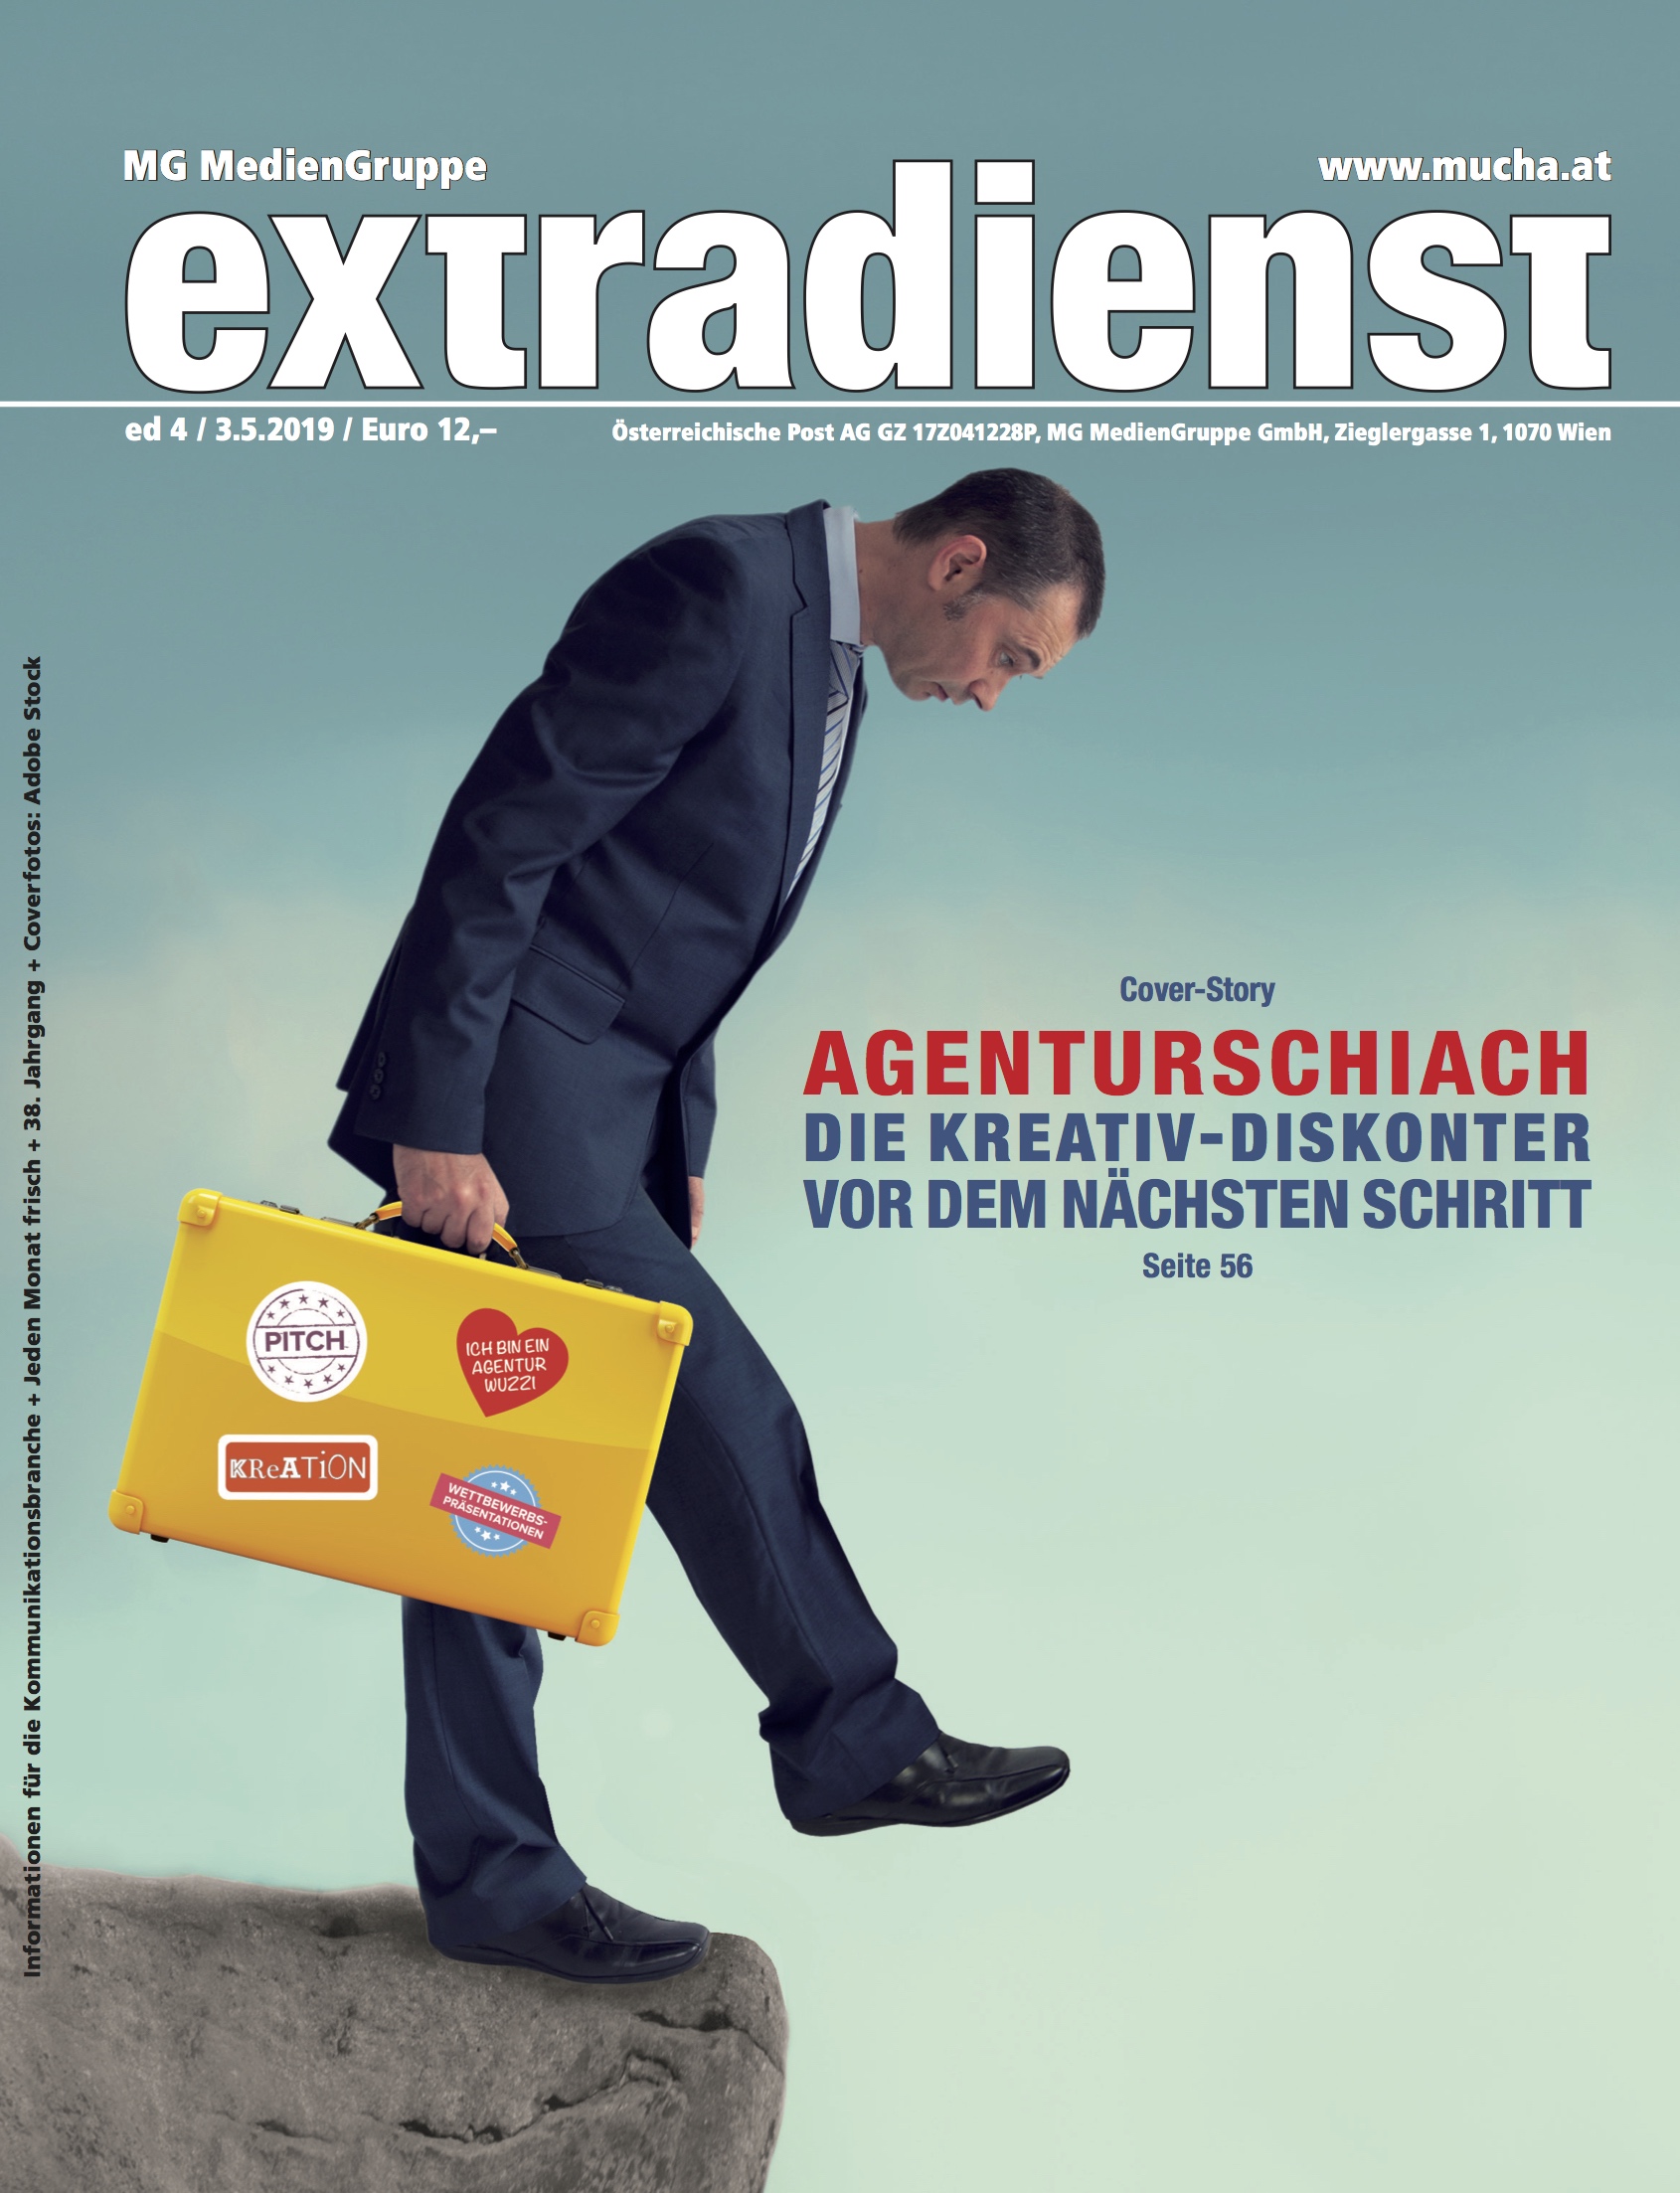 Extradienst Magazin ed4/2019